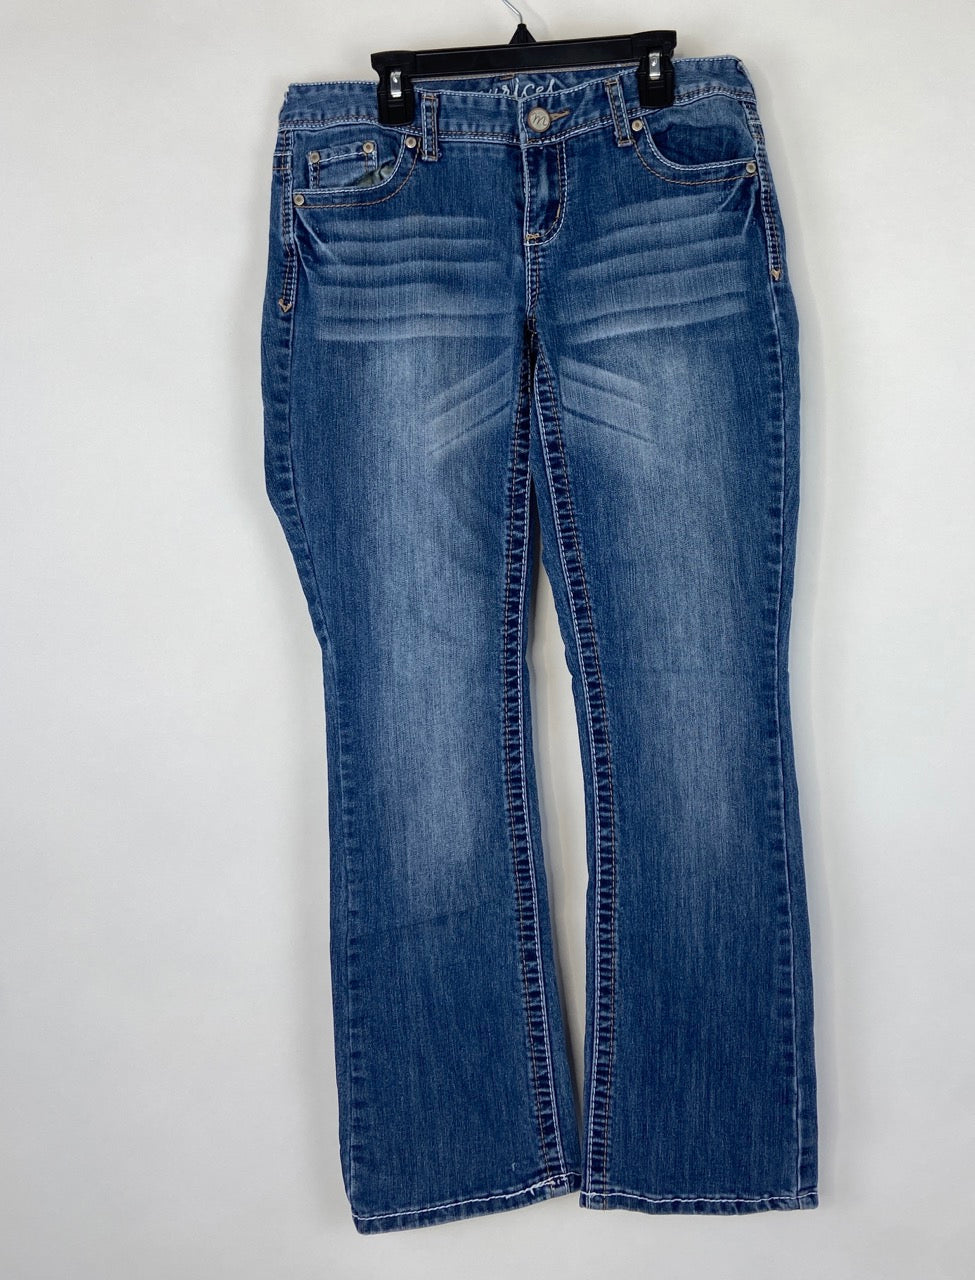 Dark Wash Maurices Jeans- 5/6 Short